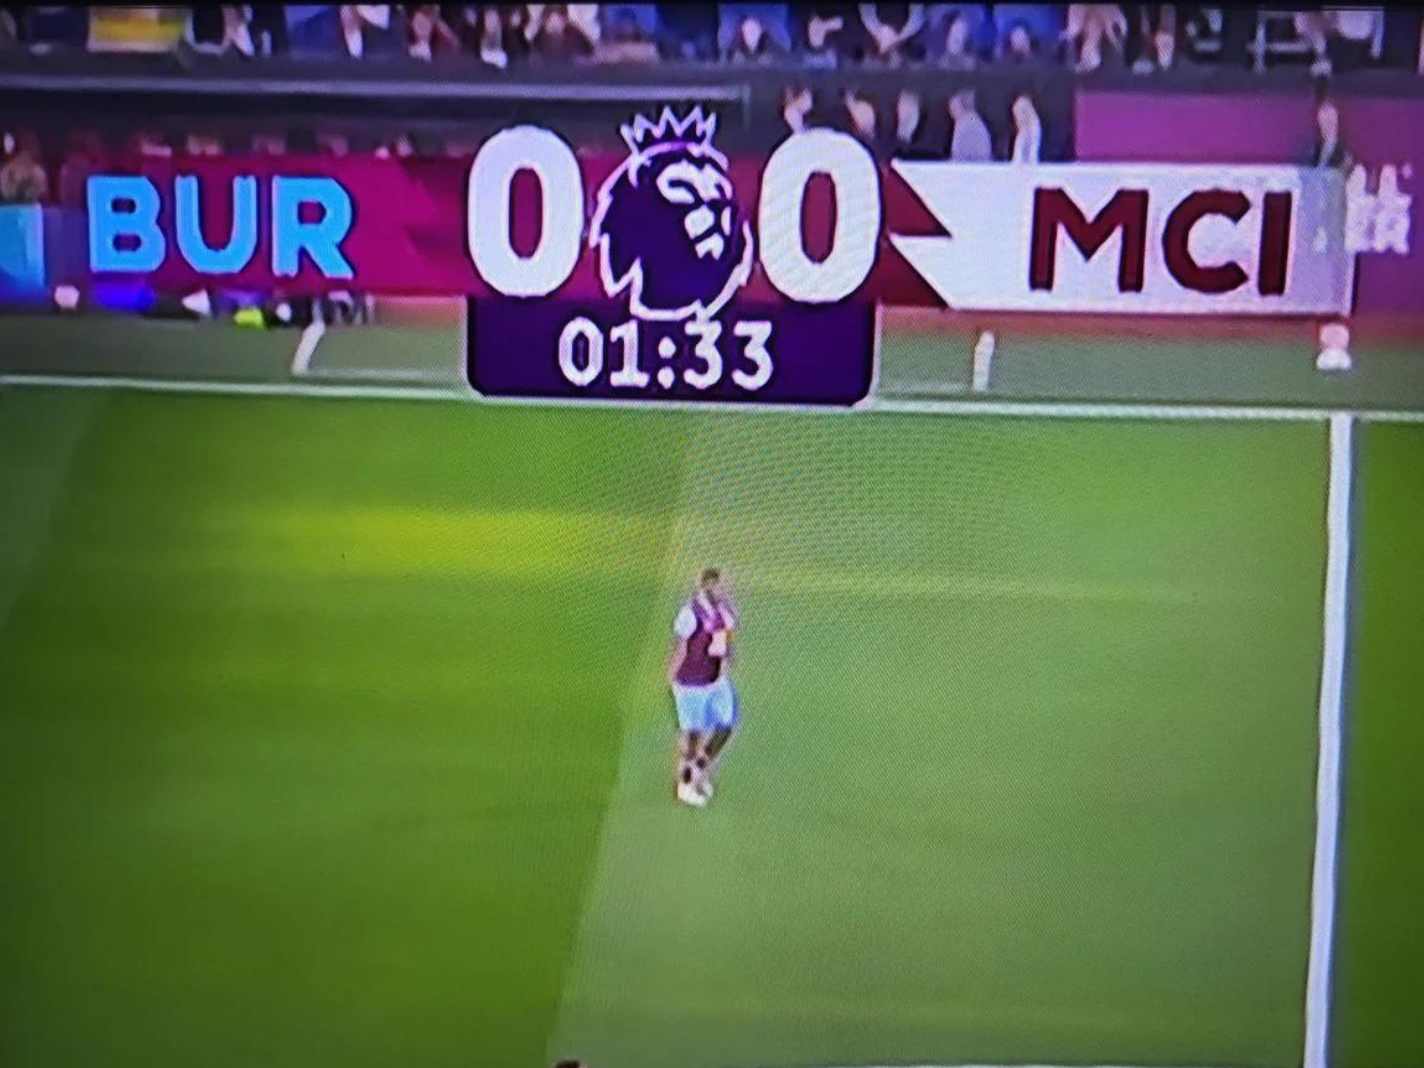 New Premier League TV Scoreboard Graphic Misses the Mark:  Looks Like a Joke